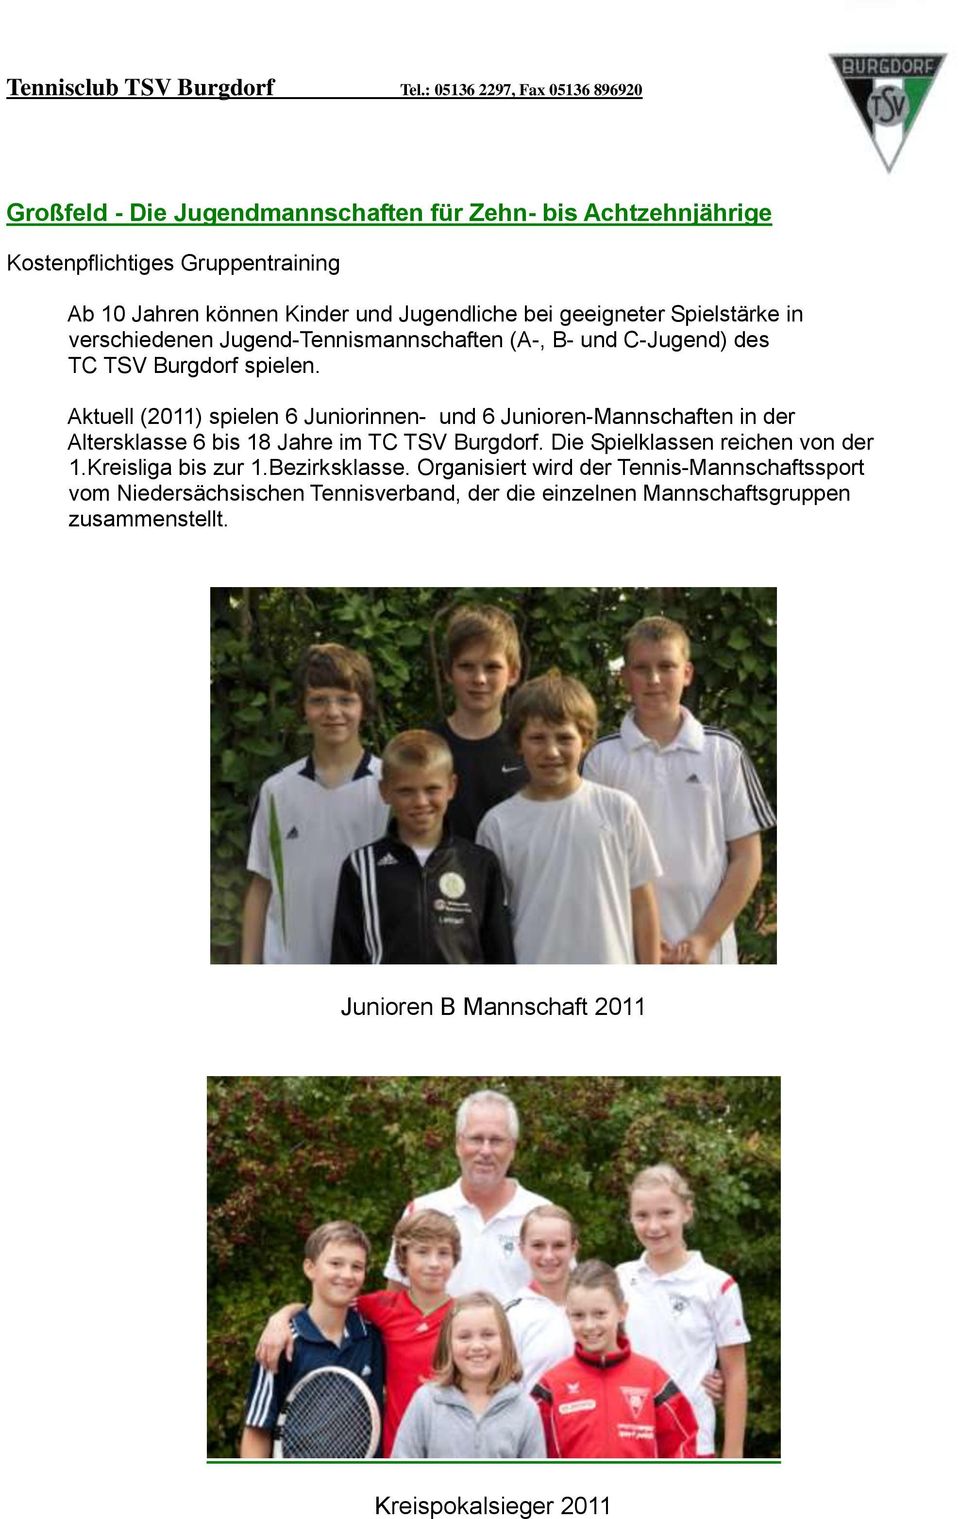 Aktuell (2011) spielen 6 Juniorinnen- und 6 Junioren-Mannschaften in der Altersklasse 6 bis 18 Jahre im TC TSV Burgdorf. Die Spielklassen reichen von der 1.